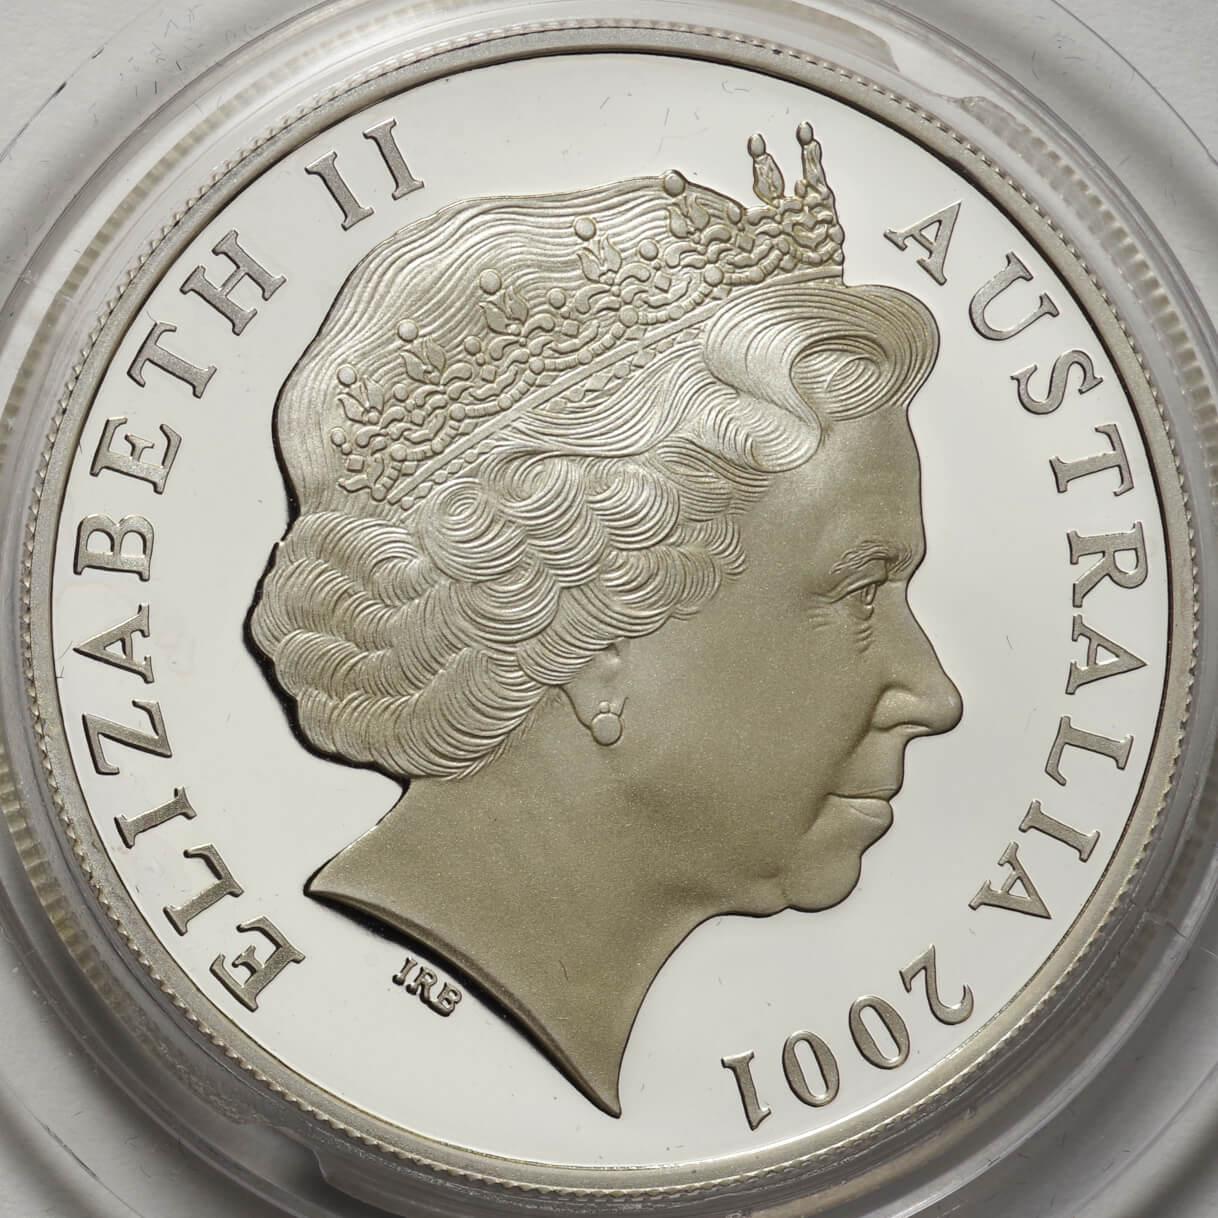 オーストラリア-Australia.カンガルー図 1ドル(1オンス)銀貨 2001年 